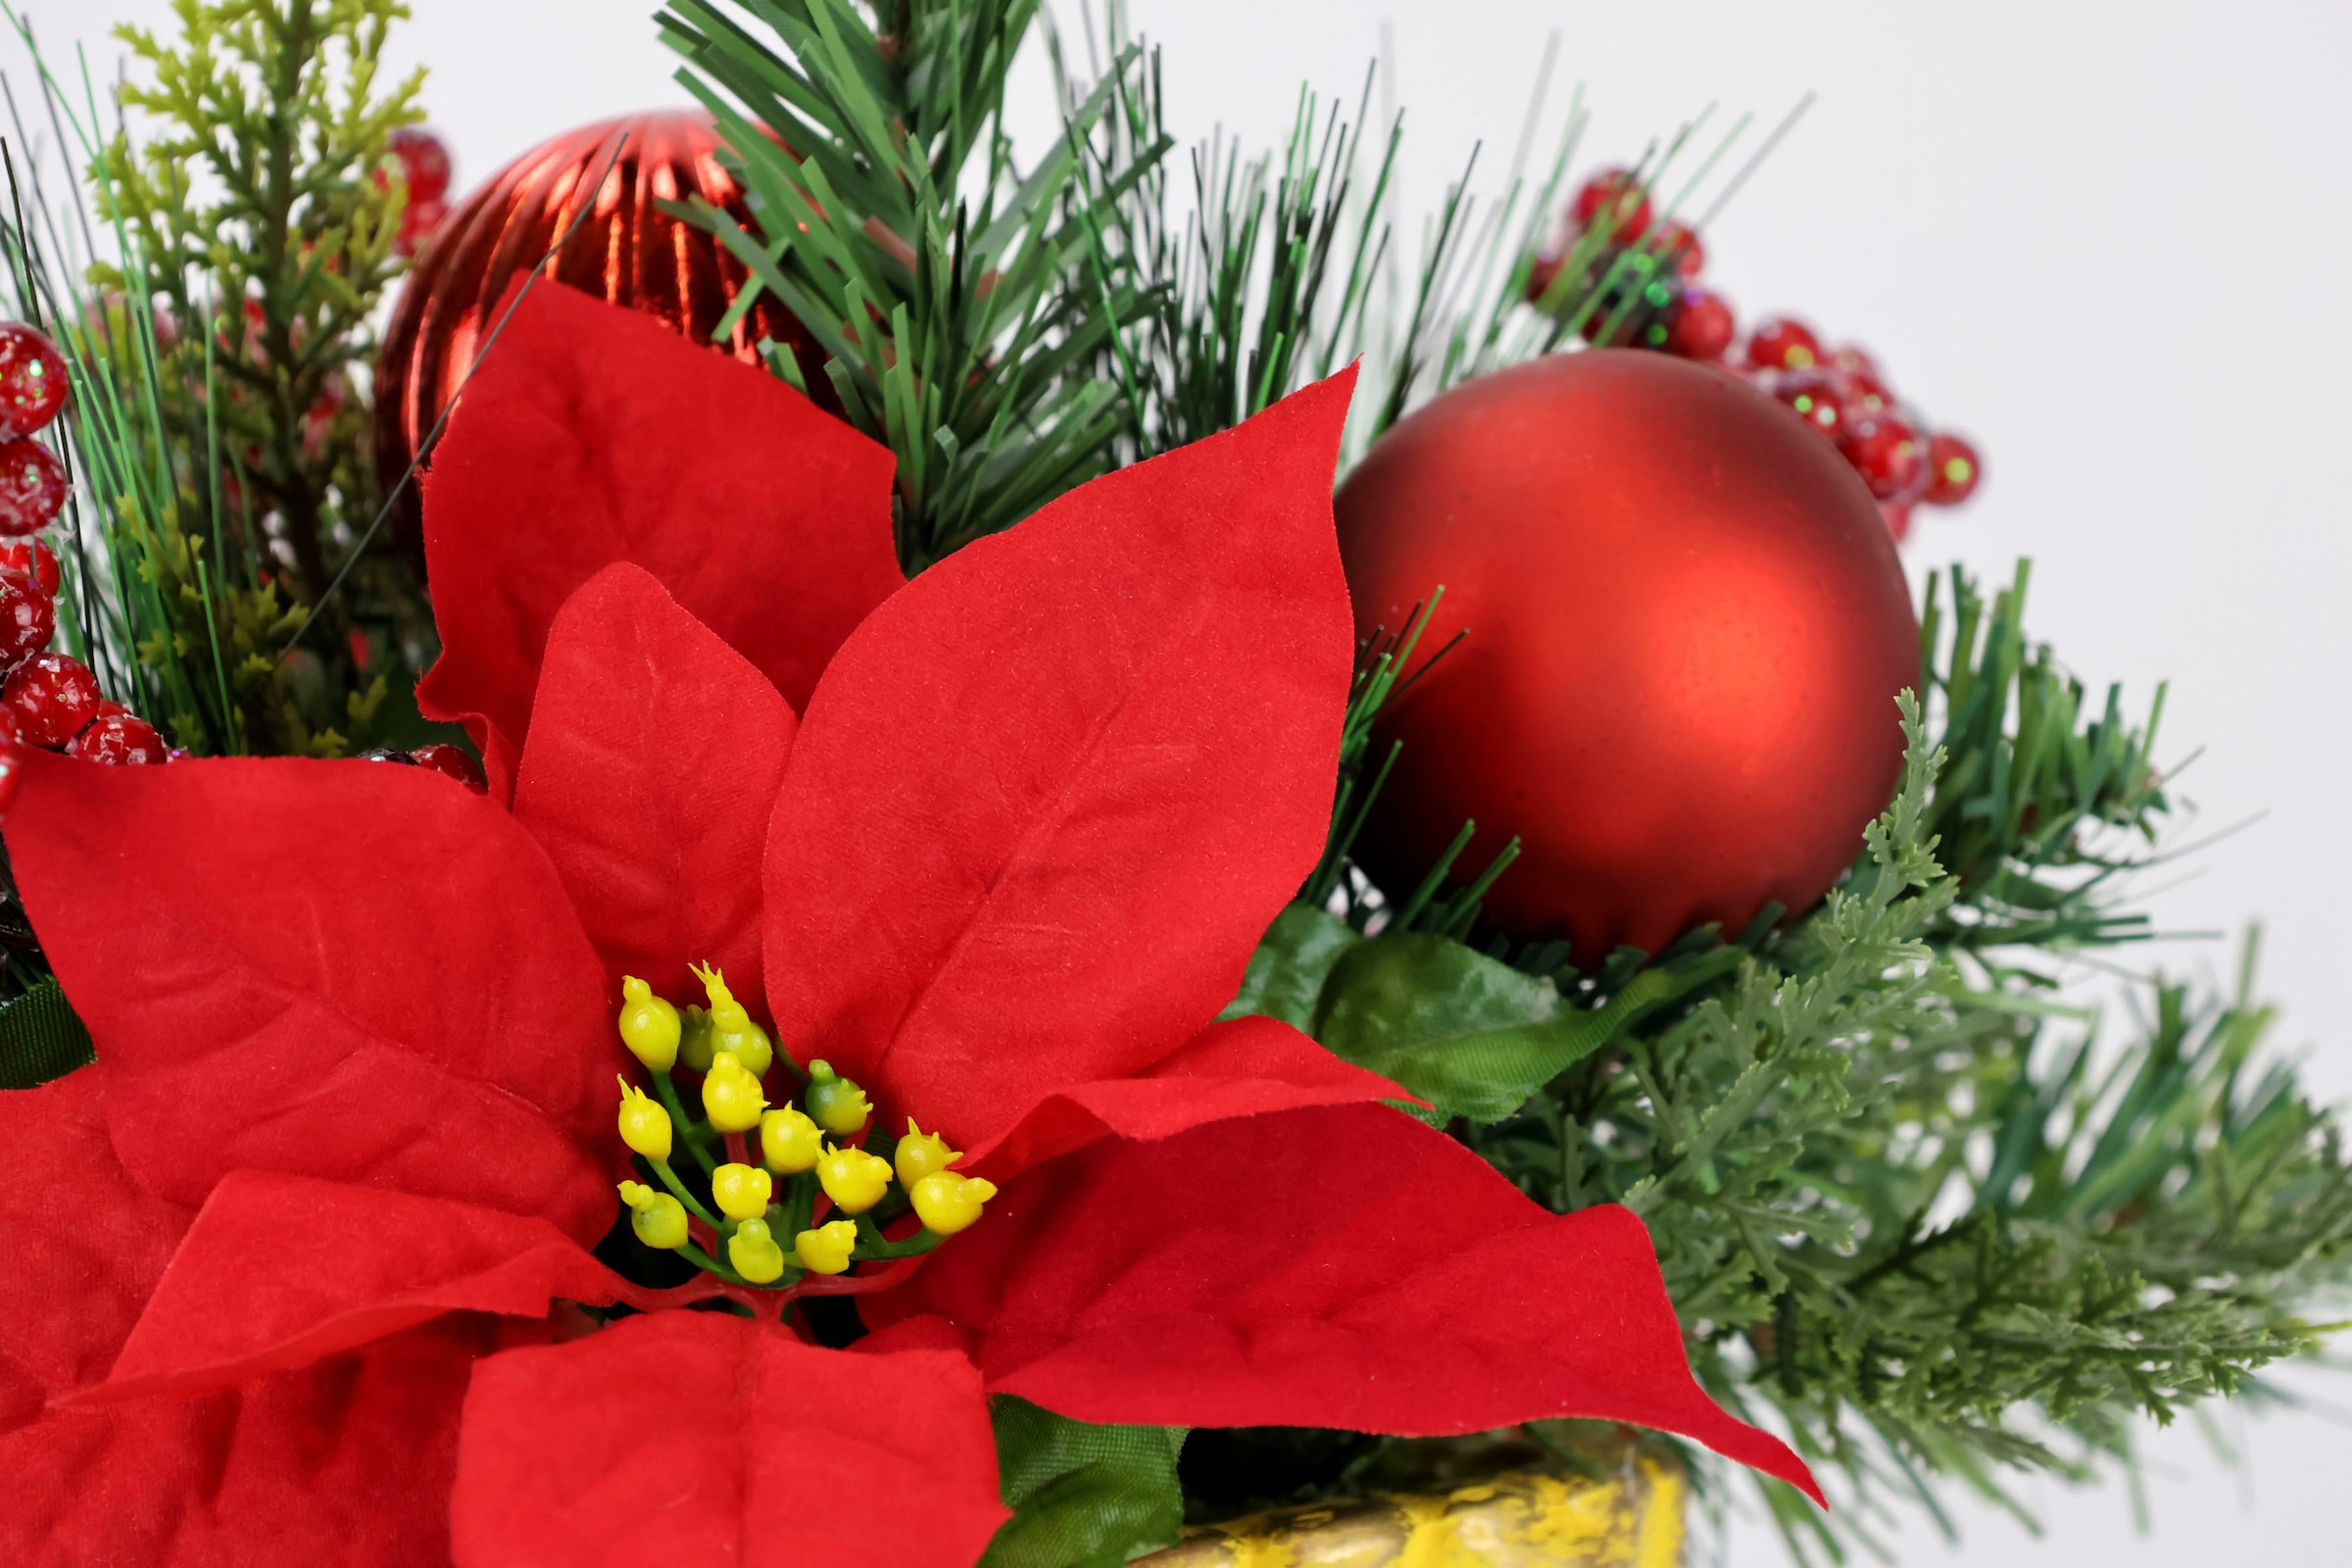 I.GE.A. Winterliche Kunstpflanze Poinsettia Weihnachtsstern, »Gesteck, festliches kaufen im Weihnachtsgesteck Blumenensemble, Pokal, jetzt Weihnachtdeko,«, Kunstblumen-Arrangement